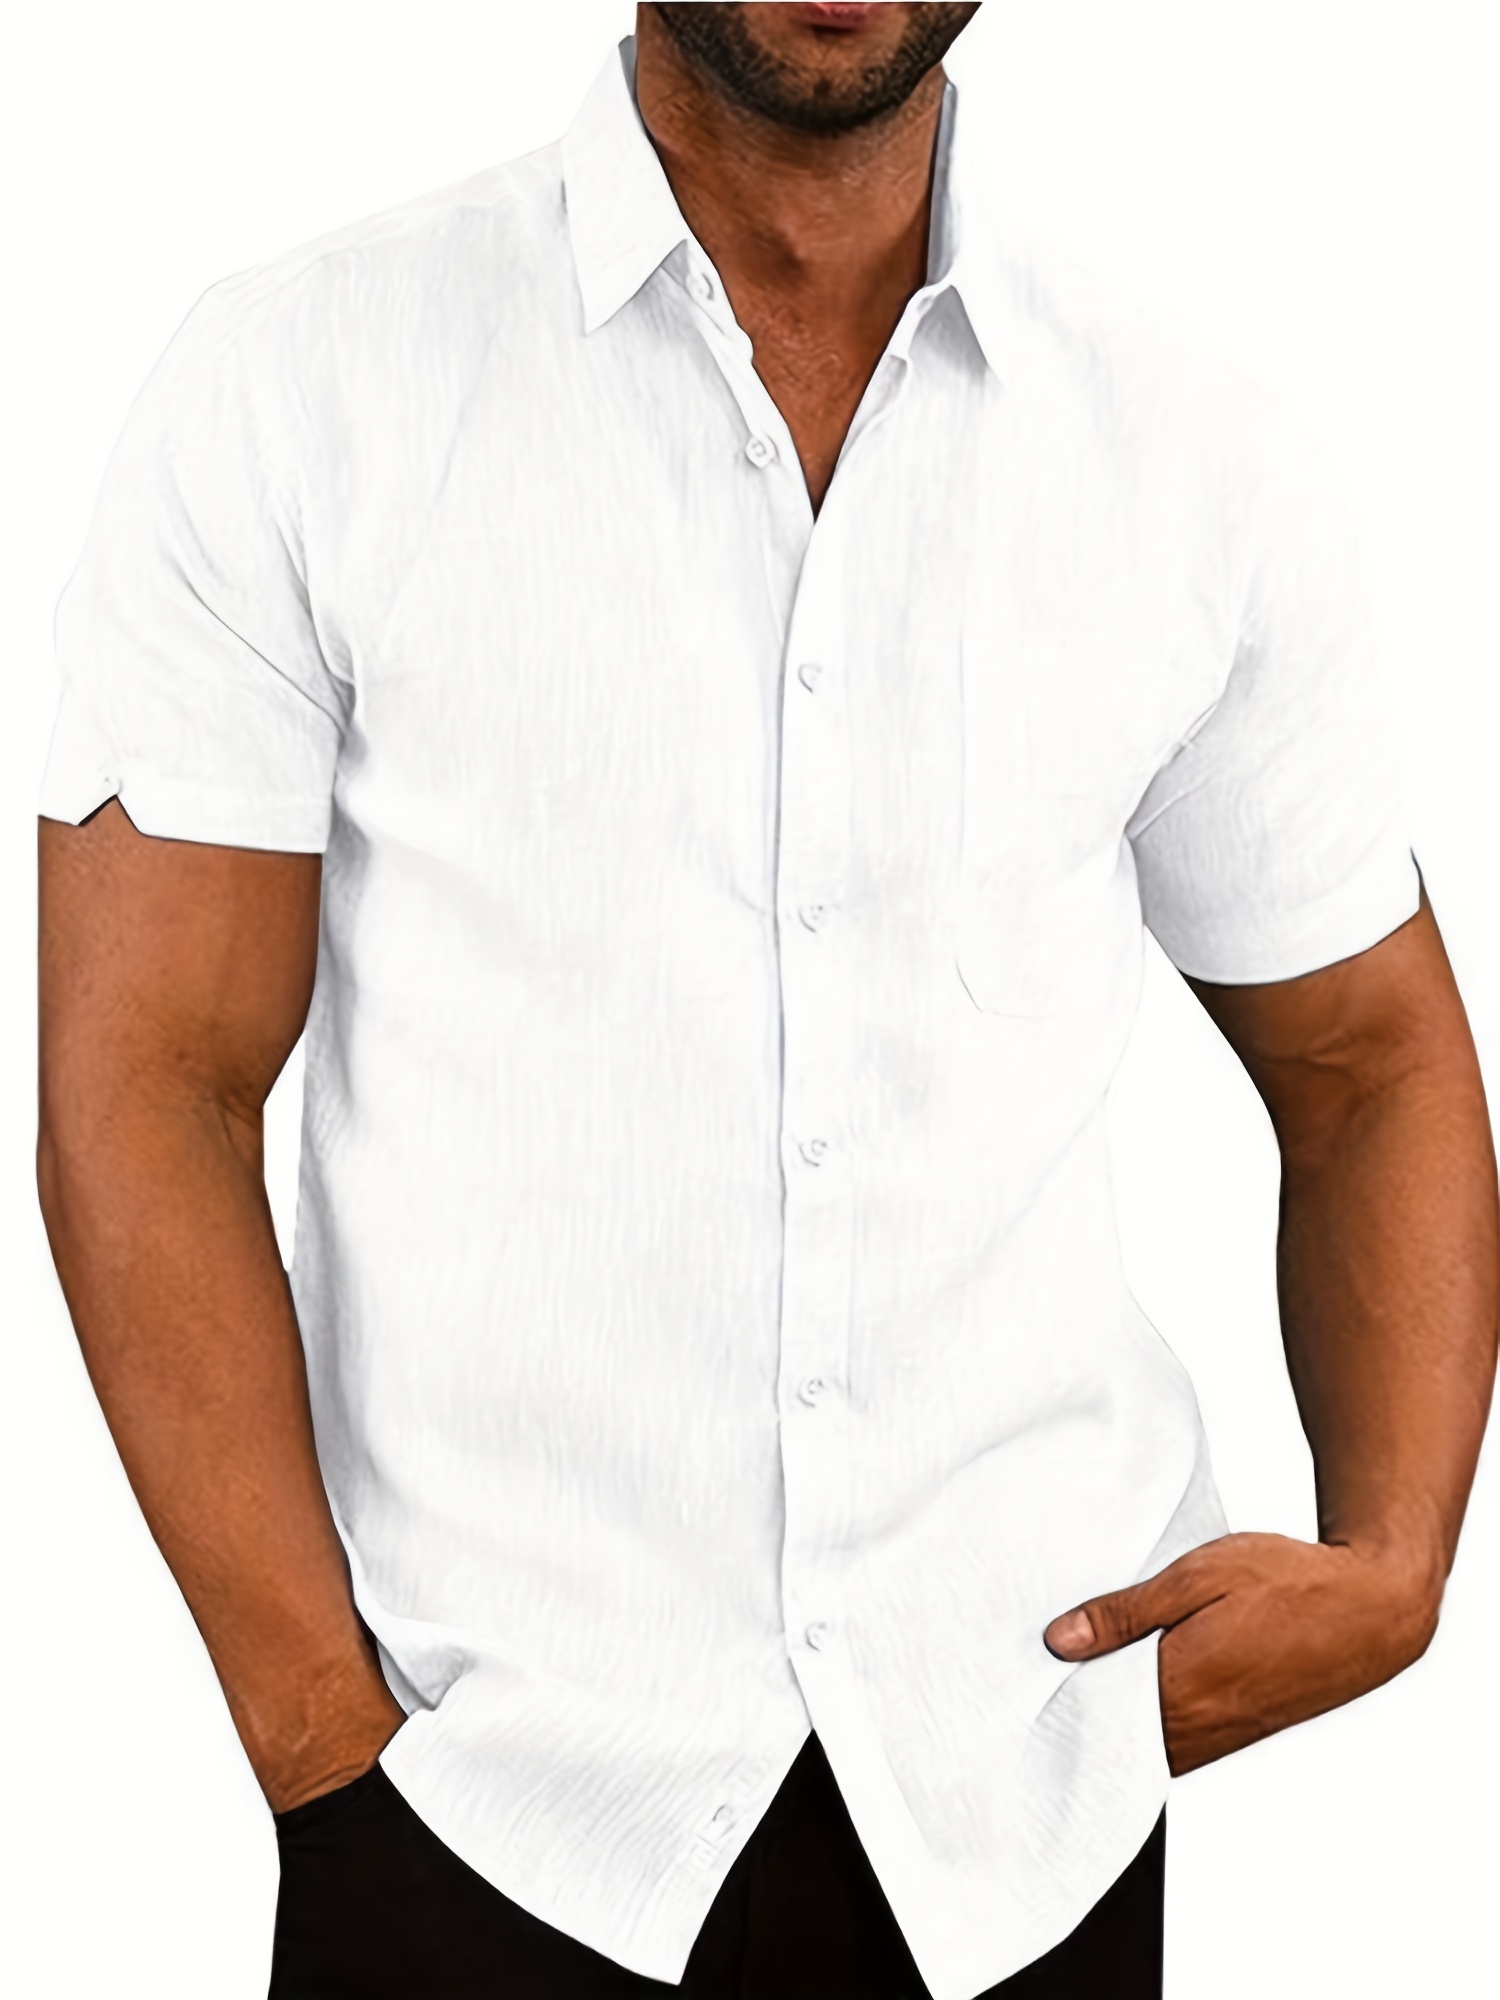 Camisa hombre tallas grandes 19230  Camisas, Camisas hombre, Tiendas  online de ropa